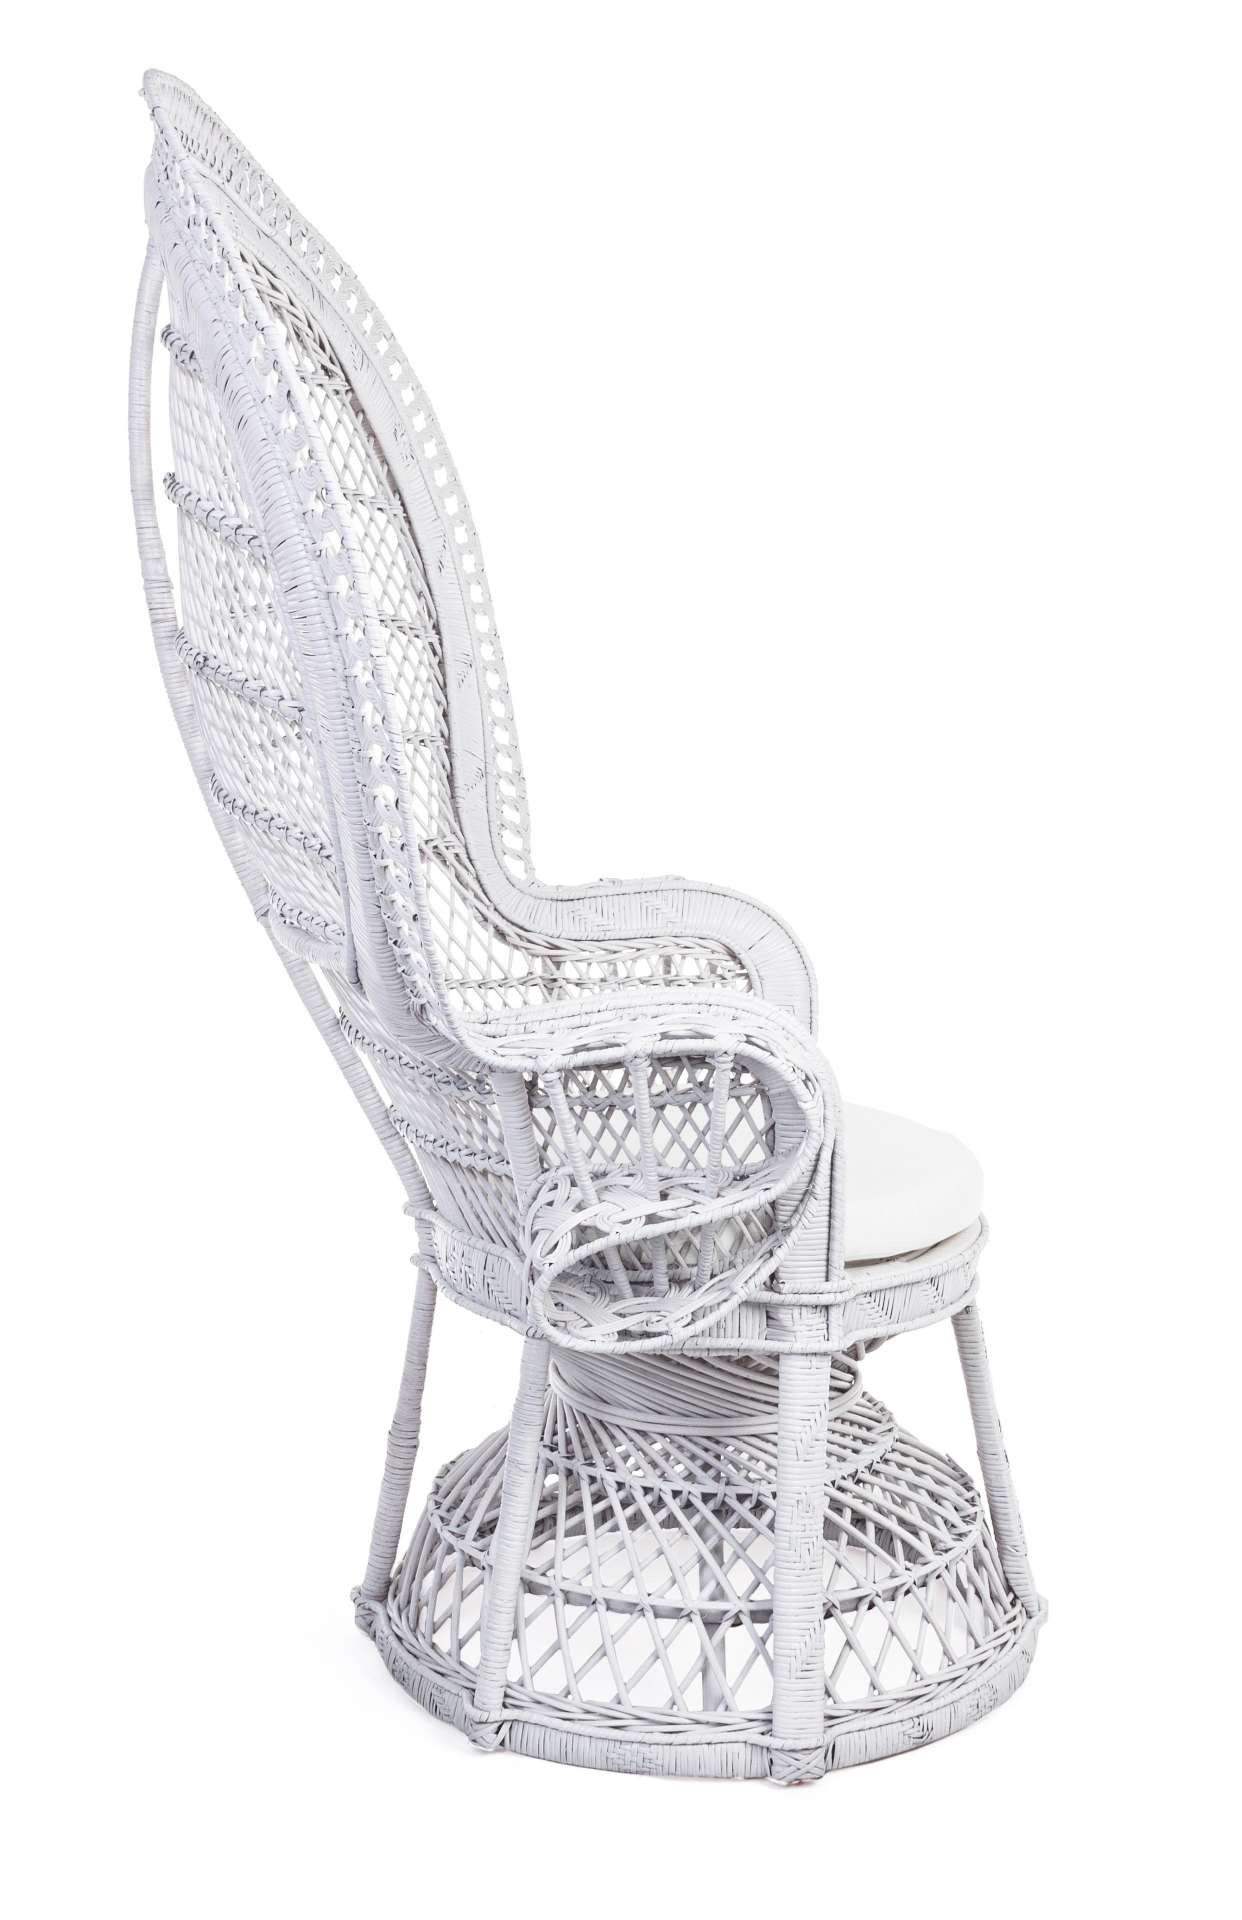 Der Sessel Pavone überzeugt mit seinem klassischen Design. Gefertigt wurde er aus Rattan, welches einen natürlichen Farbton besitzt. Das Gestell ist auch aus Rattan. Der Sessel besitzt eine Sitzhöhe von 47 cm. Die Breite beträgt 112 cm.